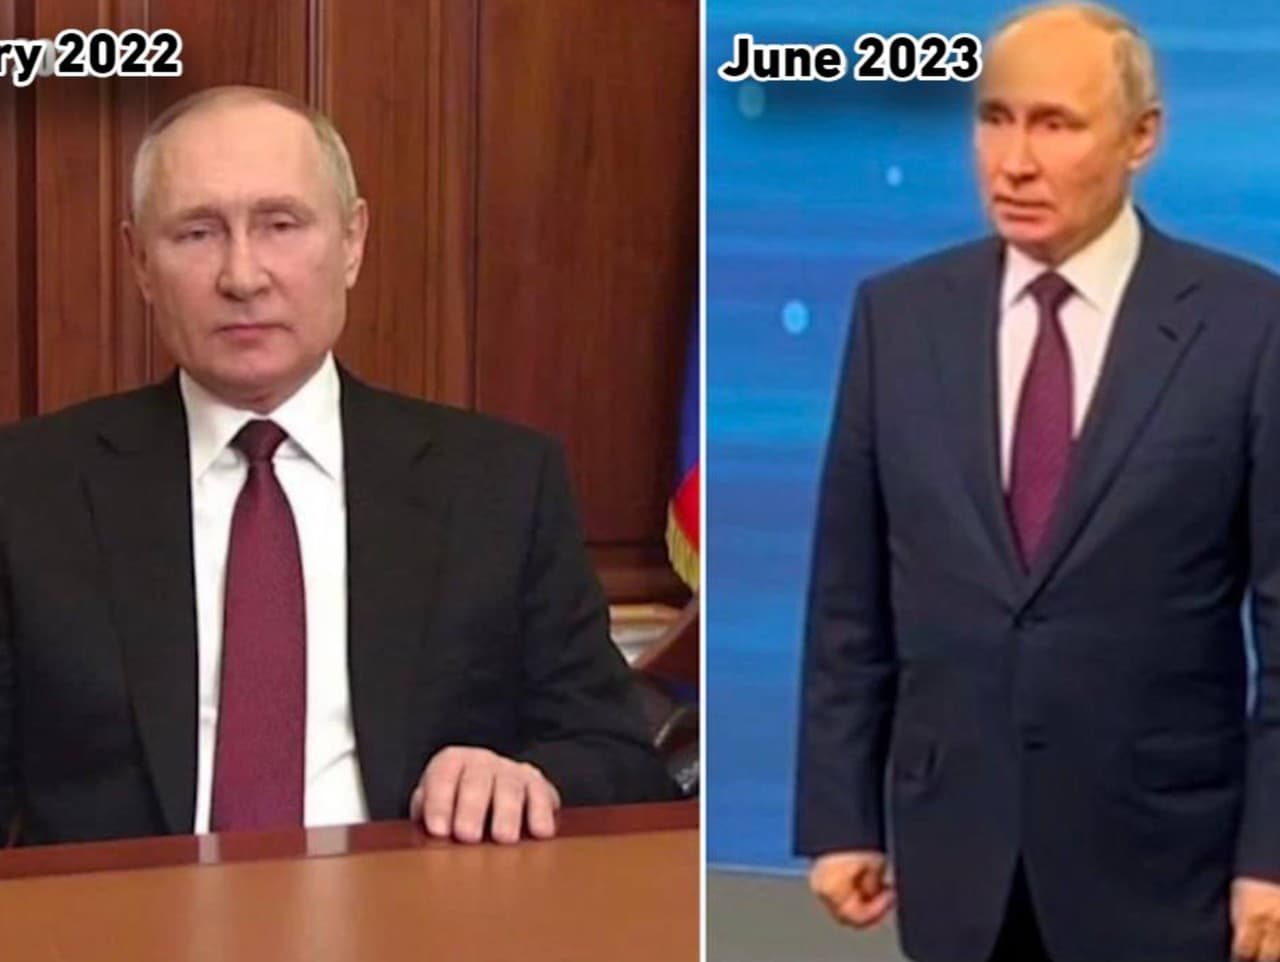 Prezident Ruskej federácie Vladimir Putin vo februári 2022 pred spustením invázie na Ukrajinu a druhá fotografia z júna 2023